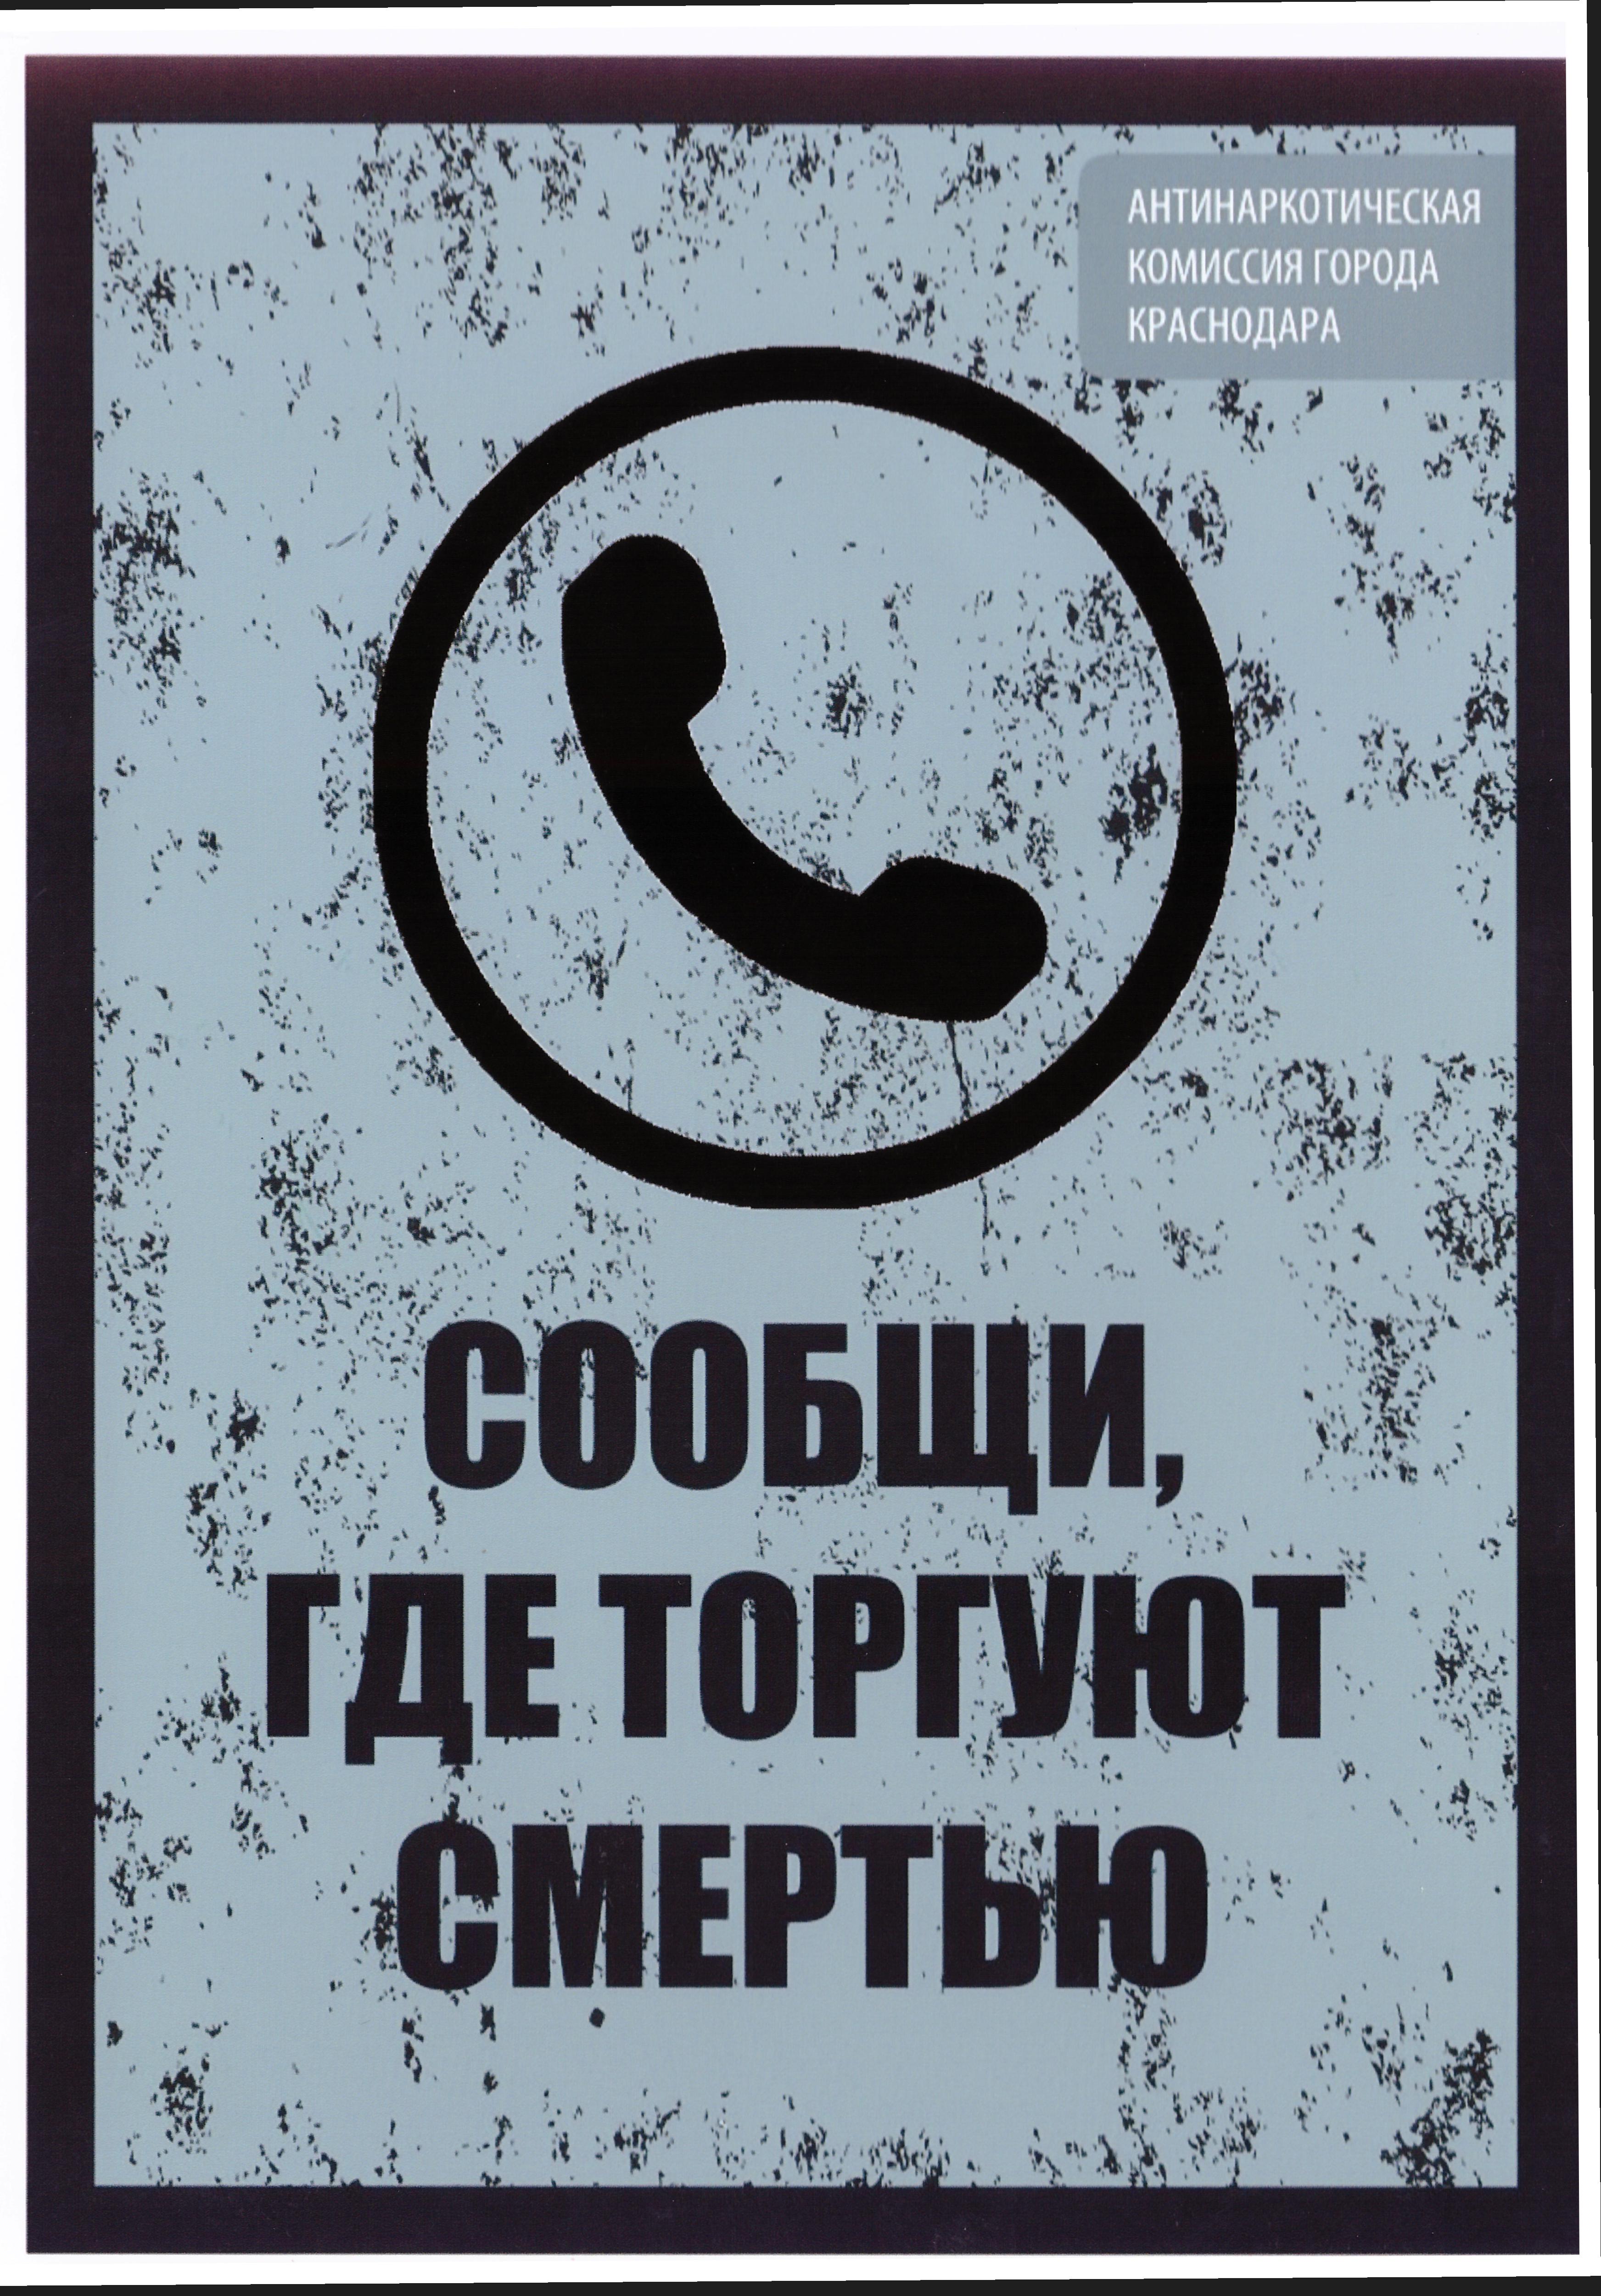 Обложка с надписью 'Сообщи, где торгуют смертью'